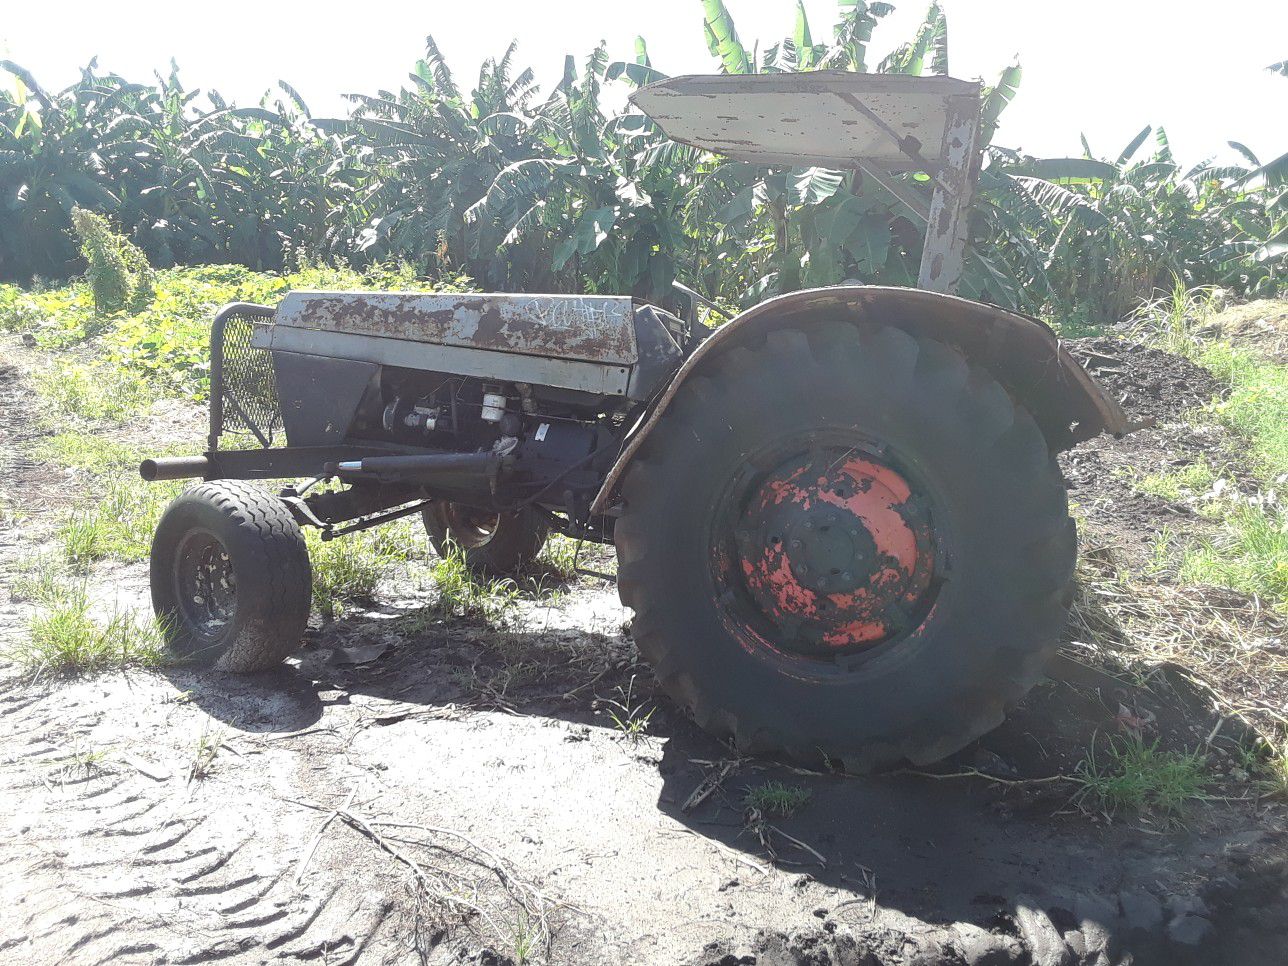 Case 1390 farm tractor